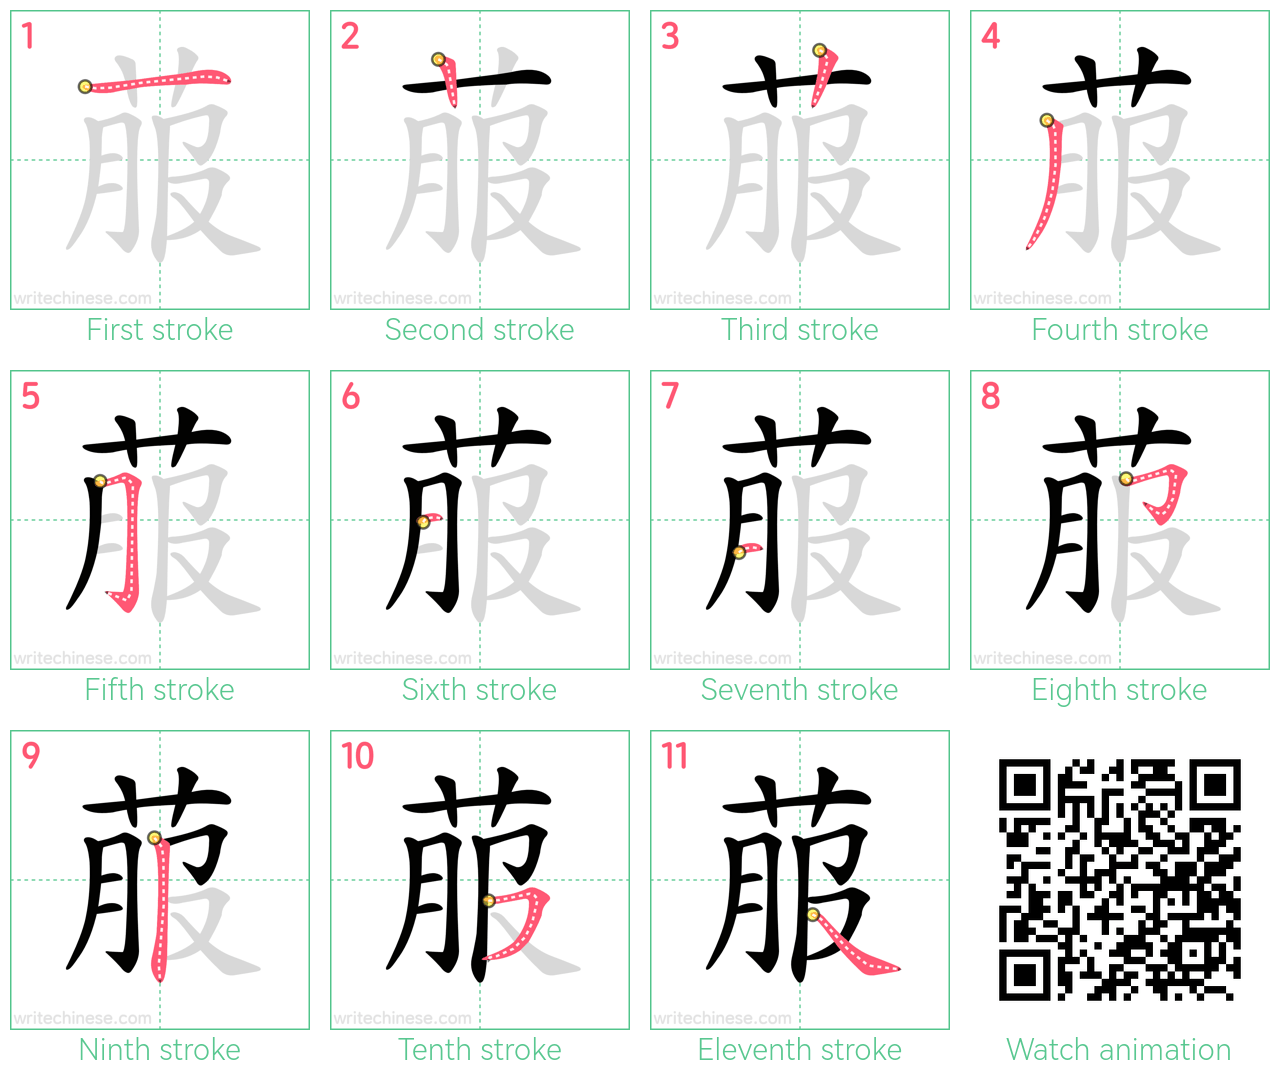 菔 step-by-step stroke order diagrams